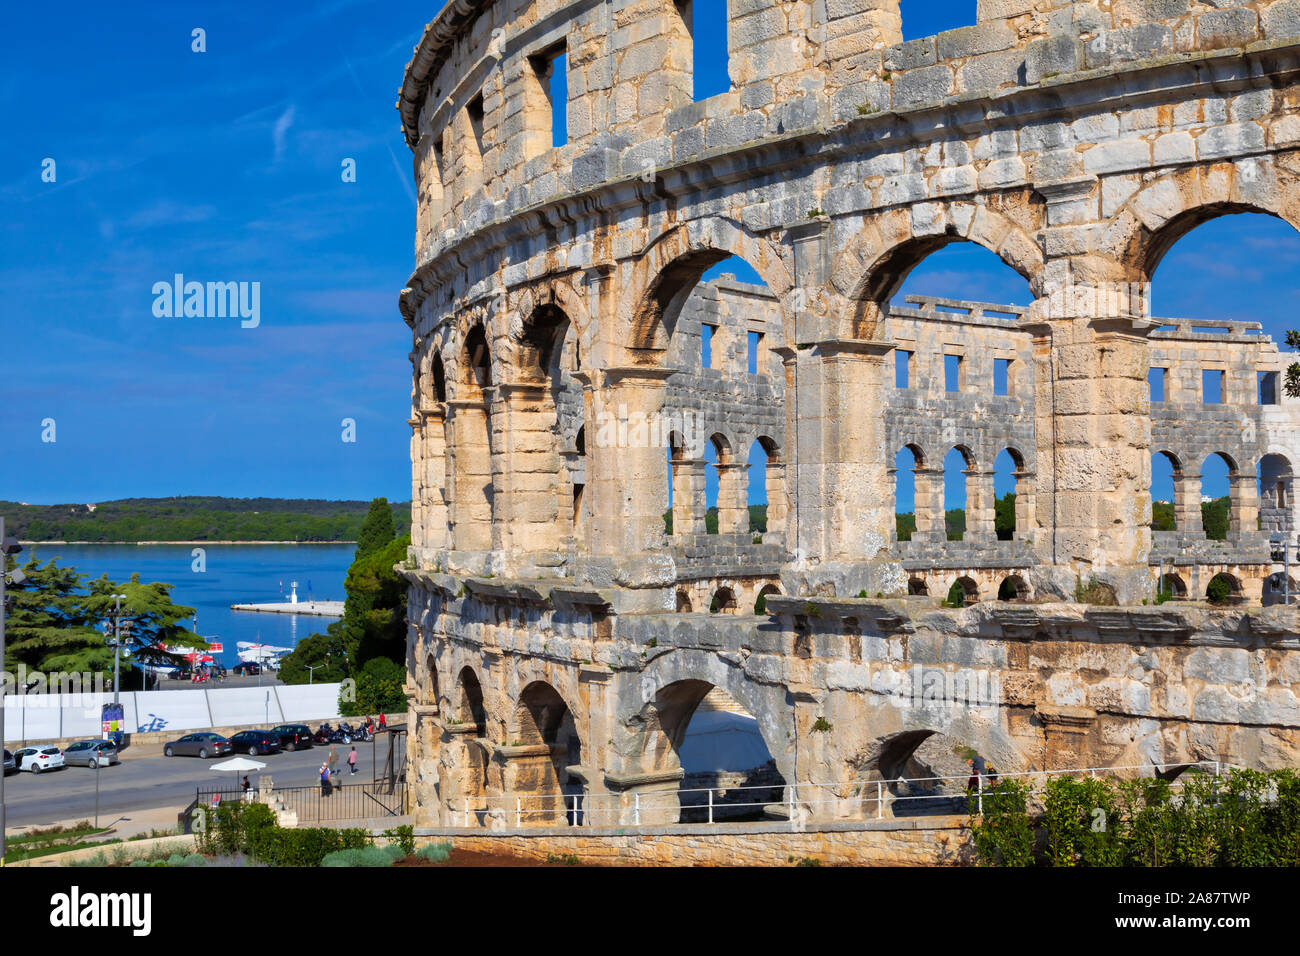 Arena in Pula, Kroatien. Ruinen der römischen Amphitheater bewahrt. UNESCO-Weltkulturerbe. Bild Stockfoto